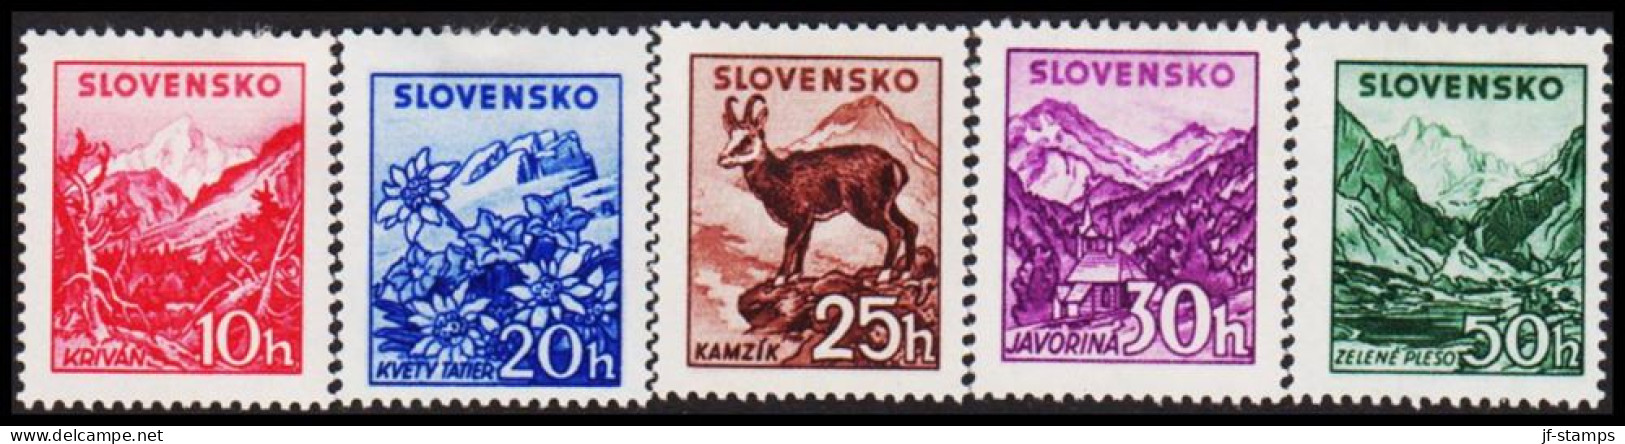 1944. SLOVENSKO Landscapes Complete Set Hinged.  (Michel 142-146) - JF546001 - Ongebruikt